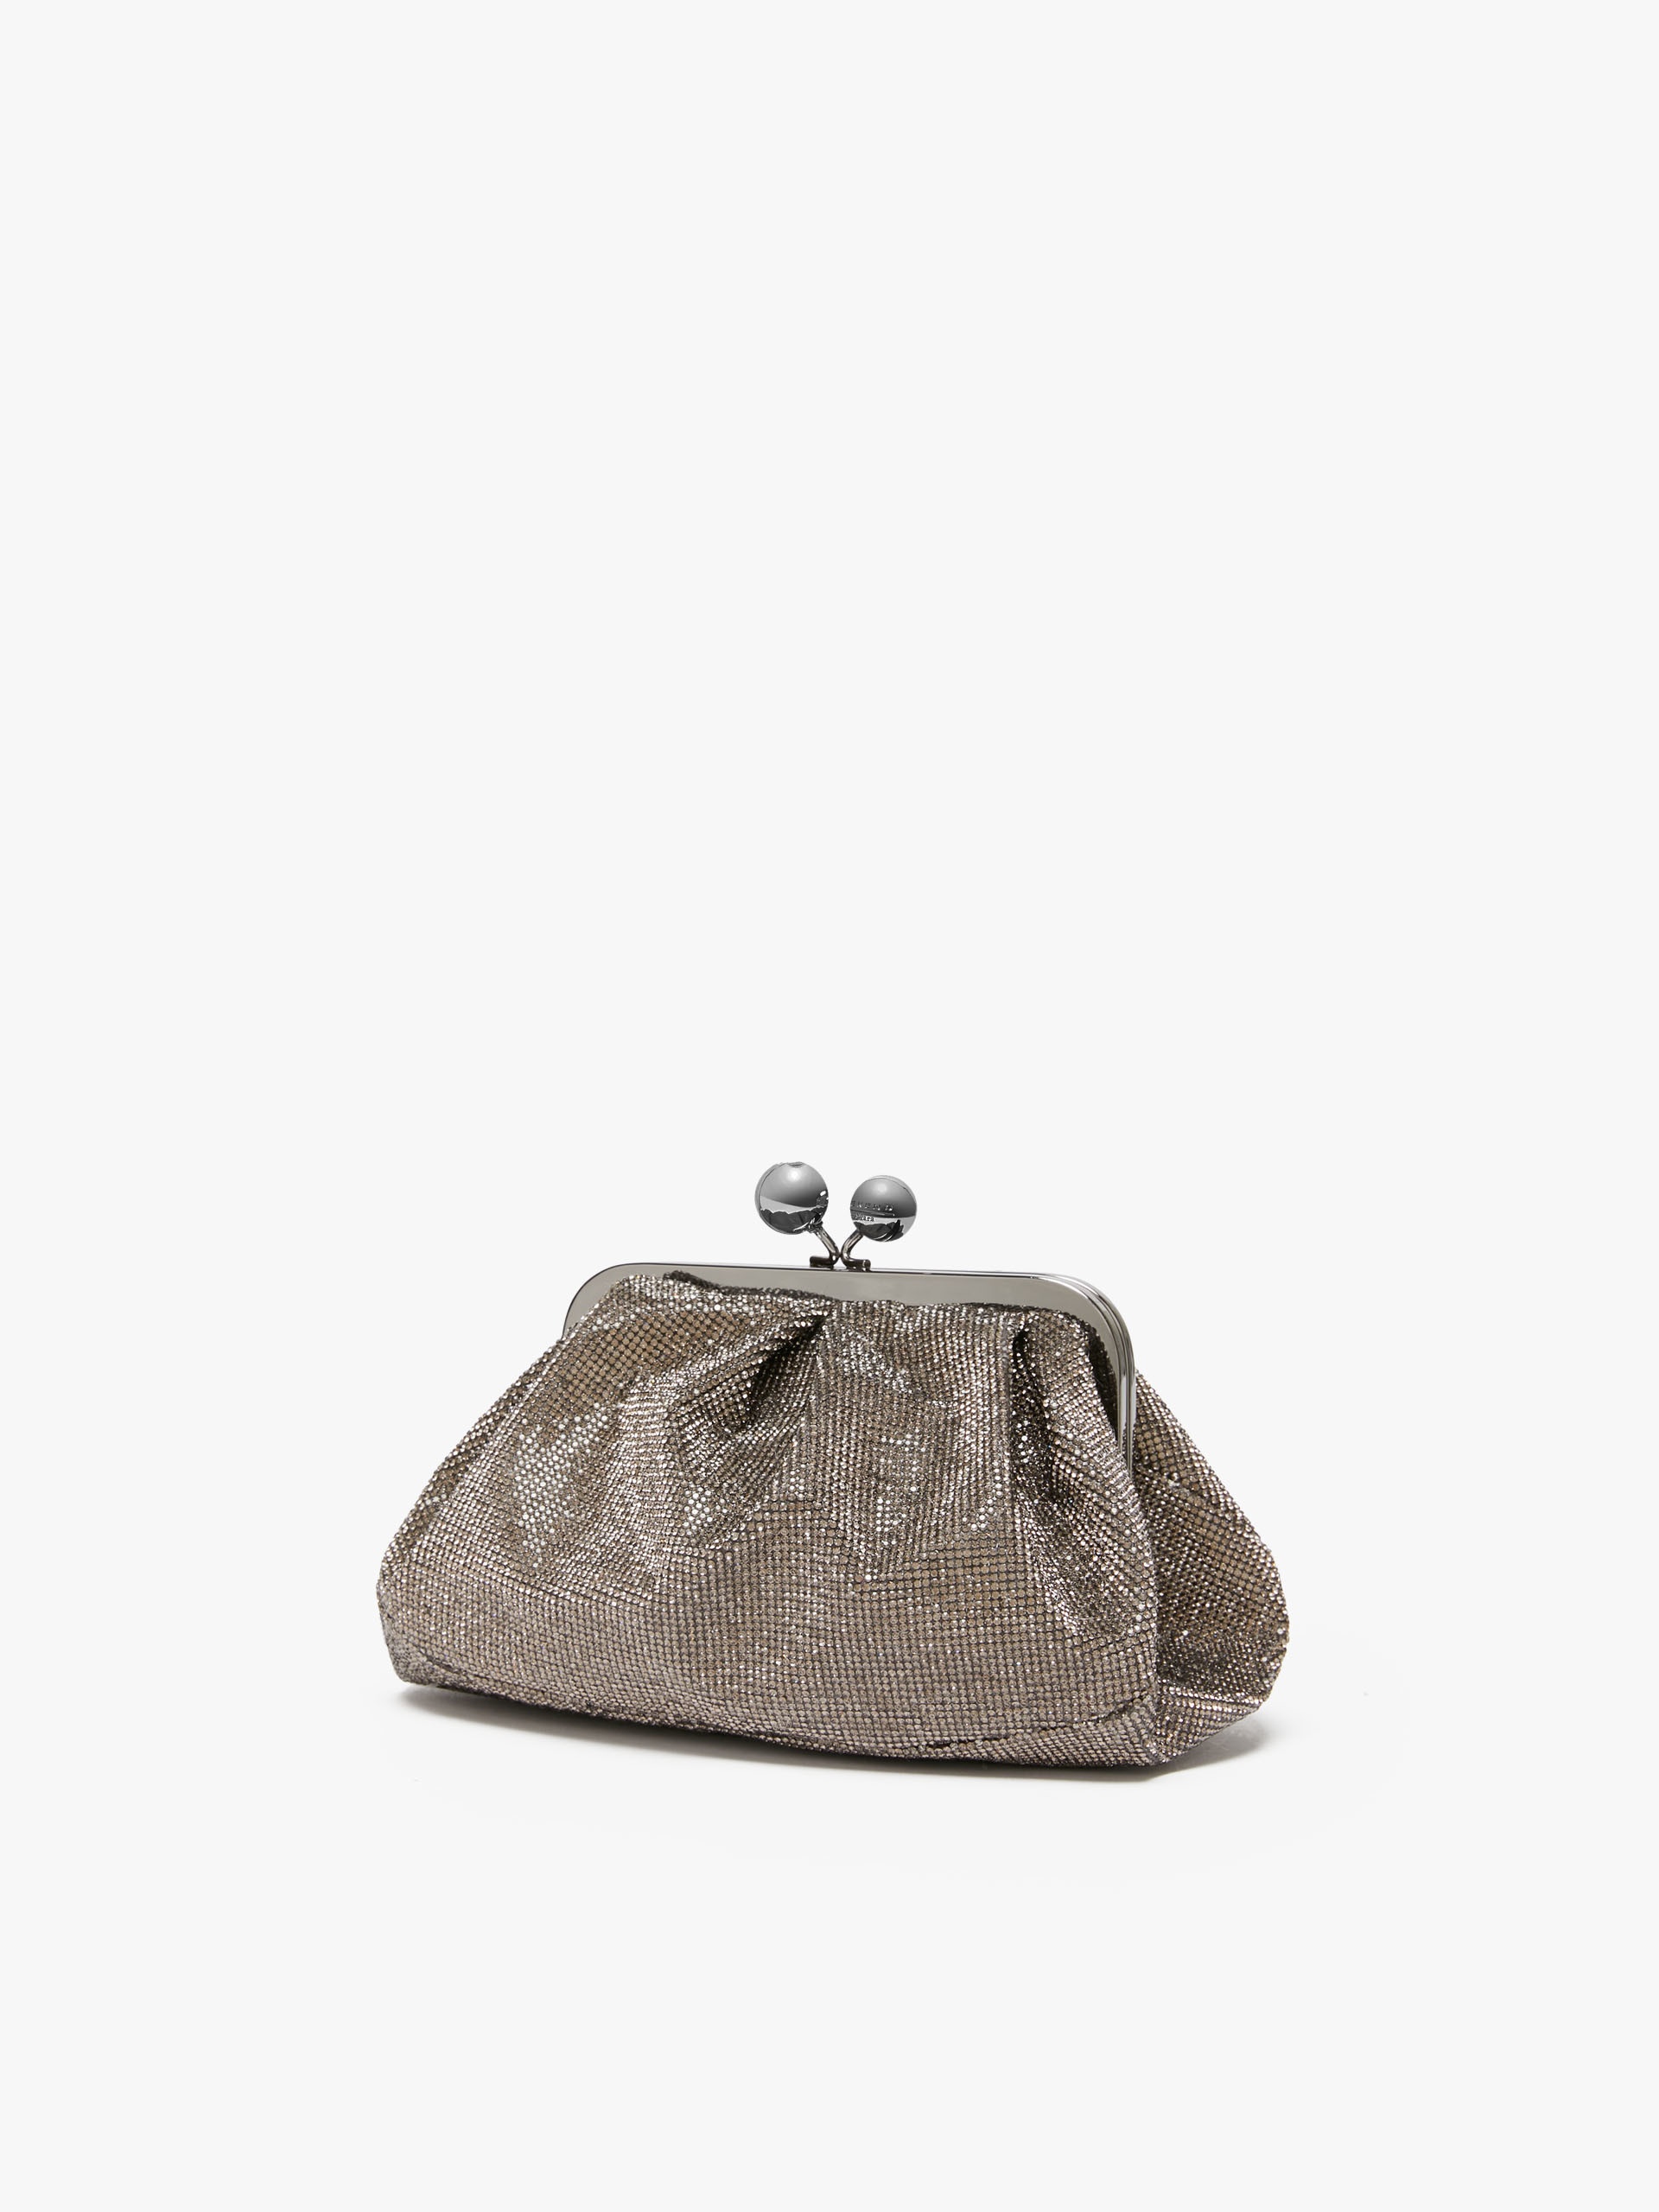 AGORAIO Small Pasticcino Bag in rhinestones - 2